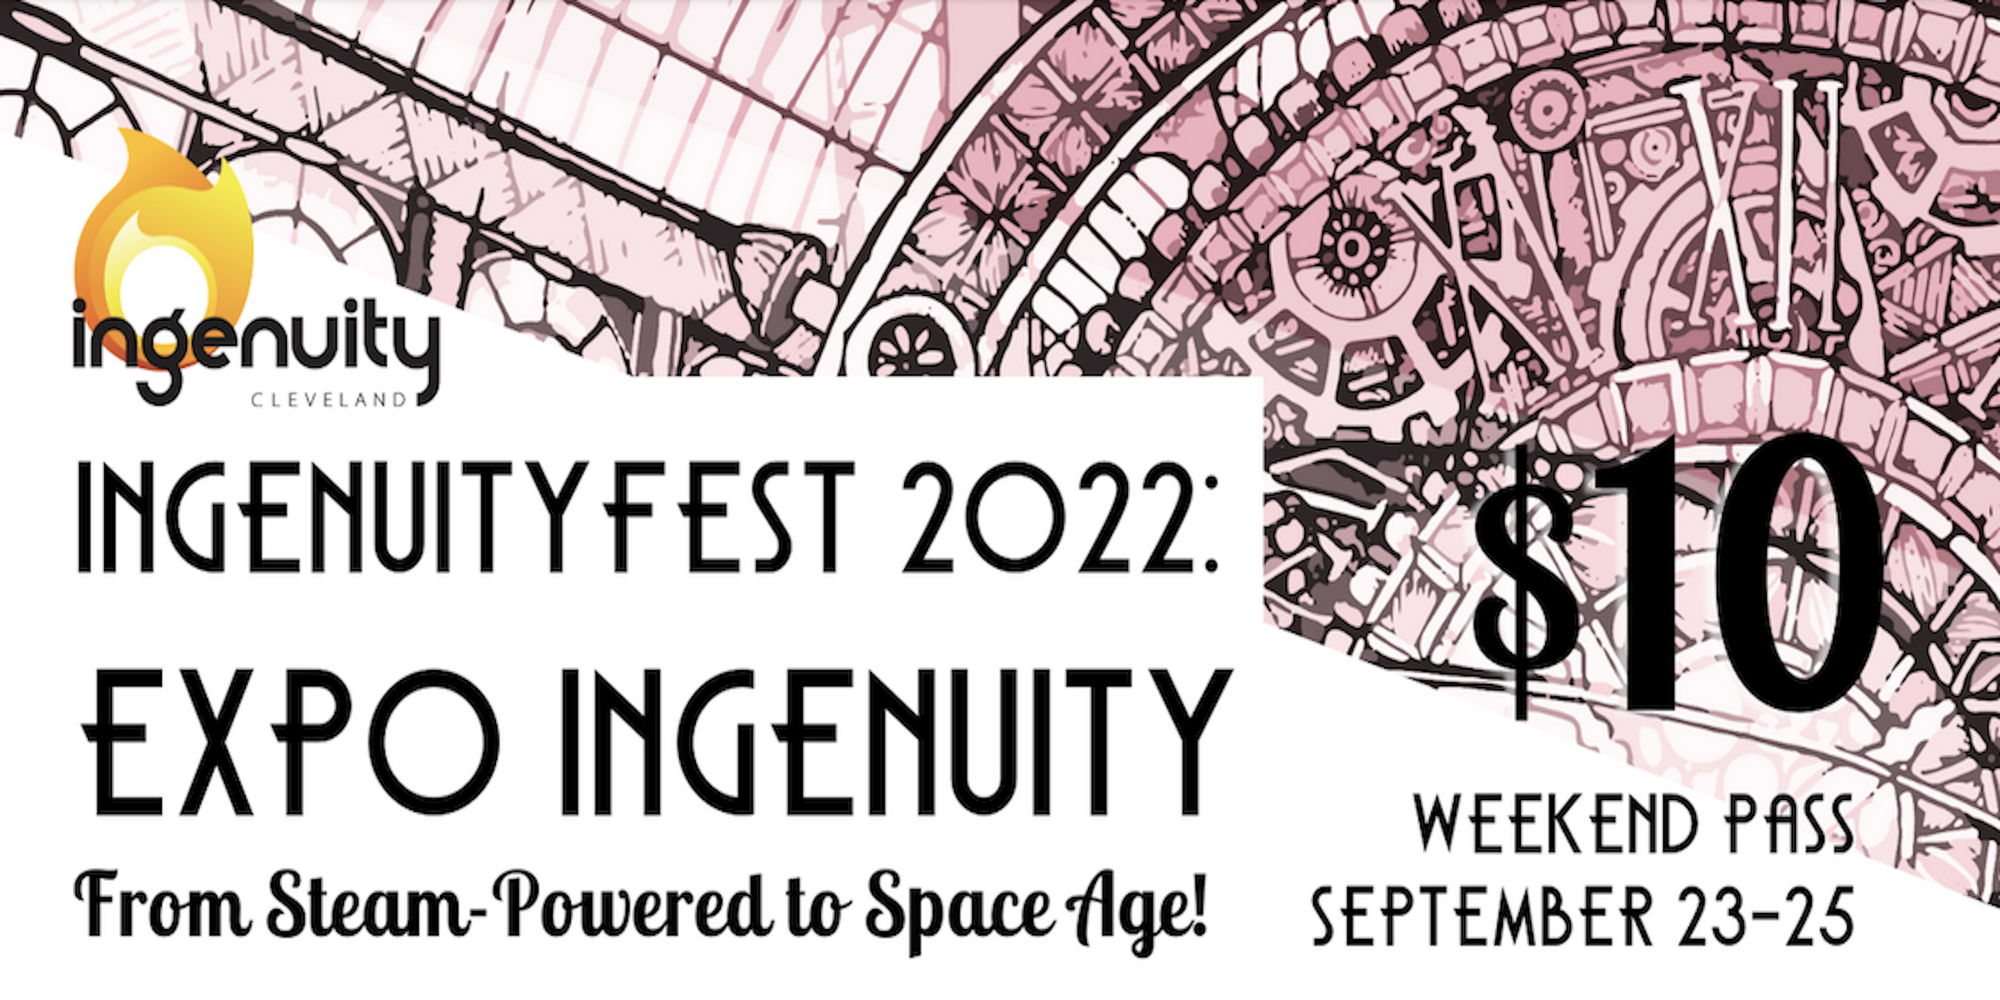 IngenuityFest 2022 | Expo: Ingenuity promotional image